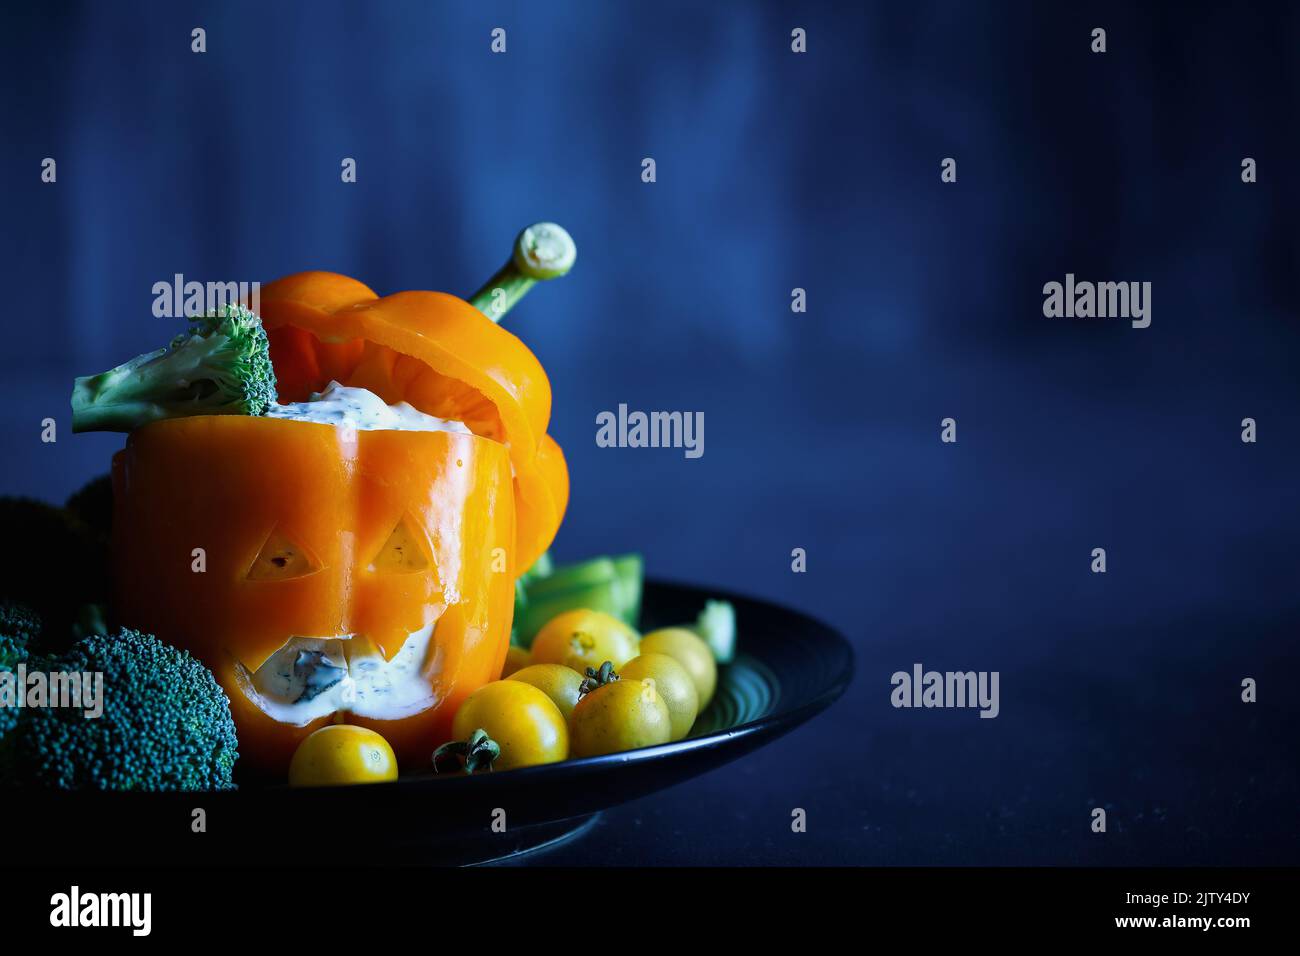 Poivron orange bourré coloré en tant que monstre avec une face découpée sculptée dans une citrouille d'Halloween Jack O'Lantern et rempli de sauce Tzatziki. Se Banque D'Images